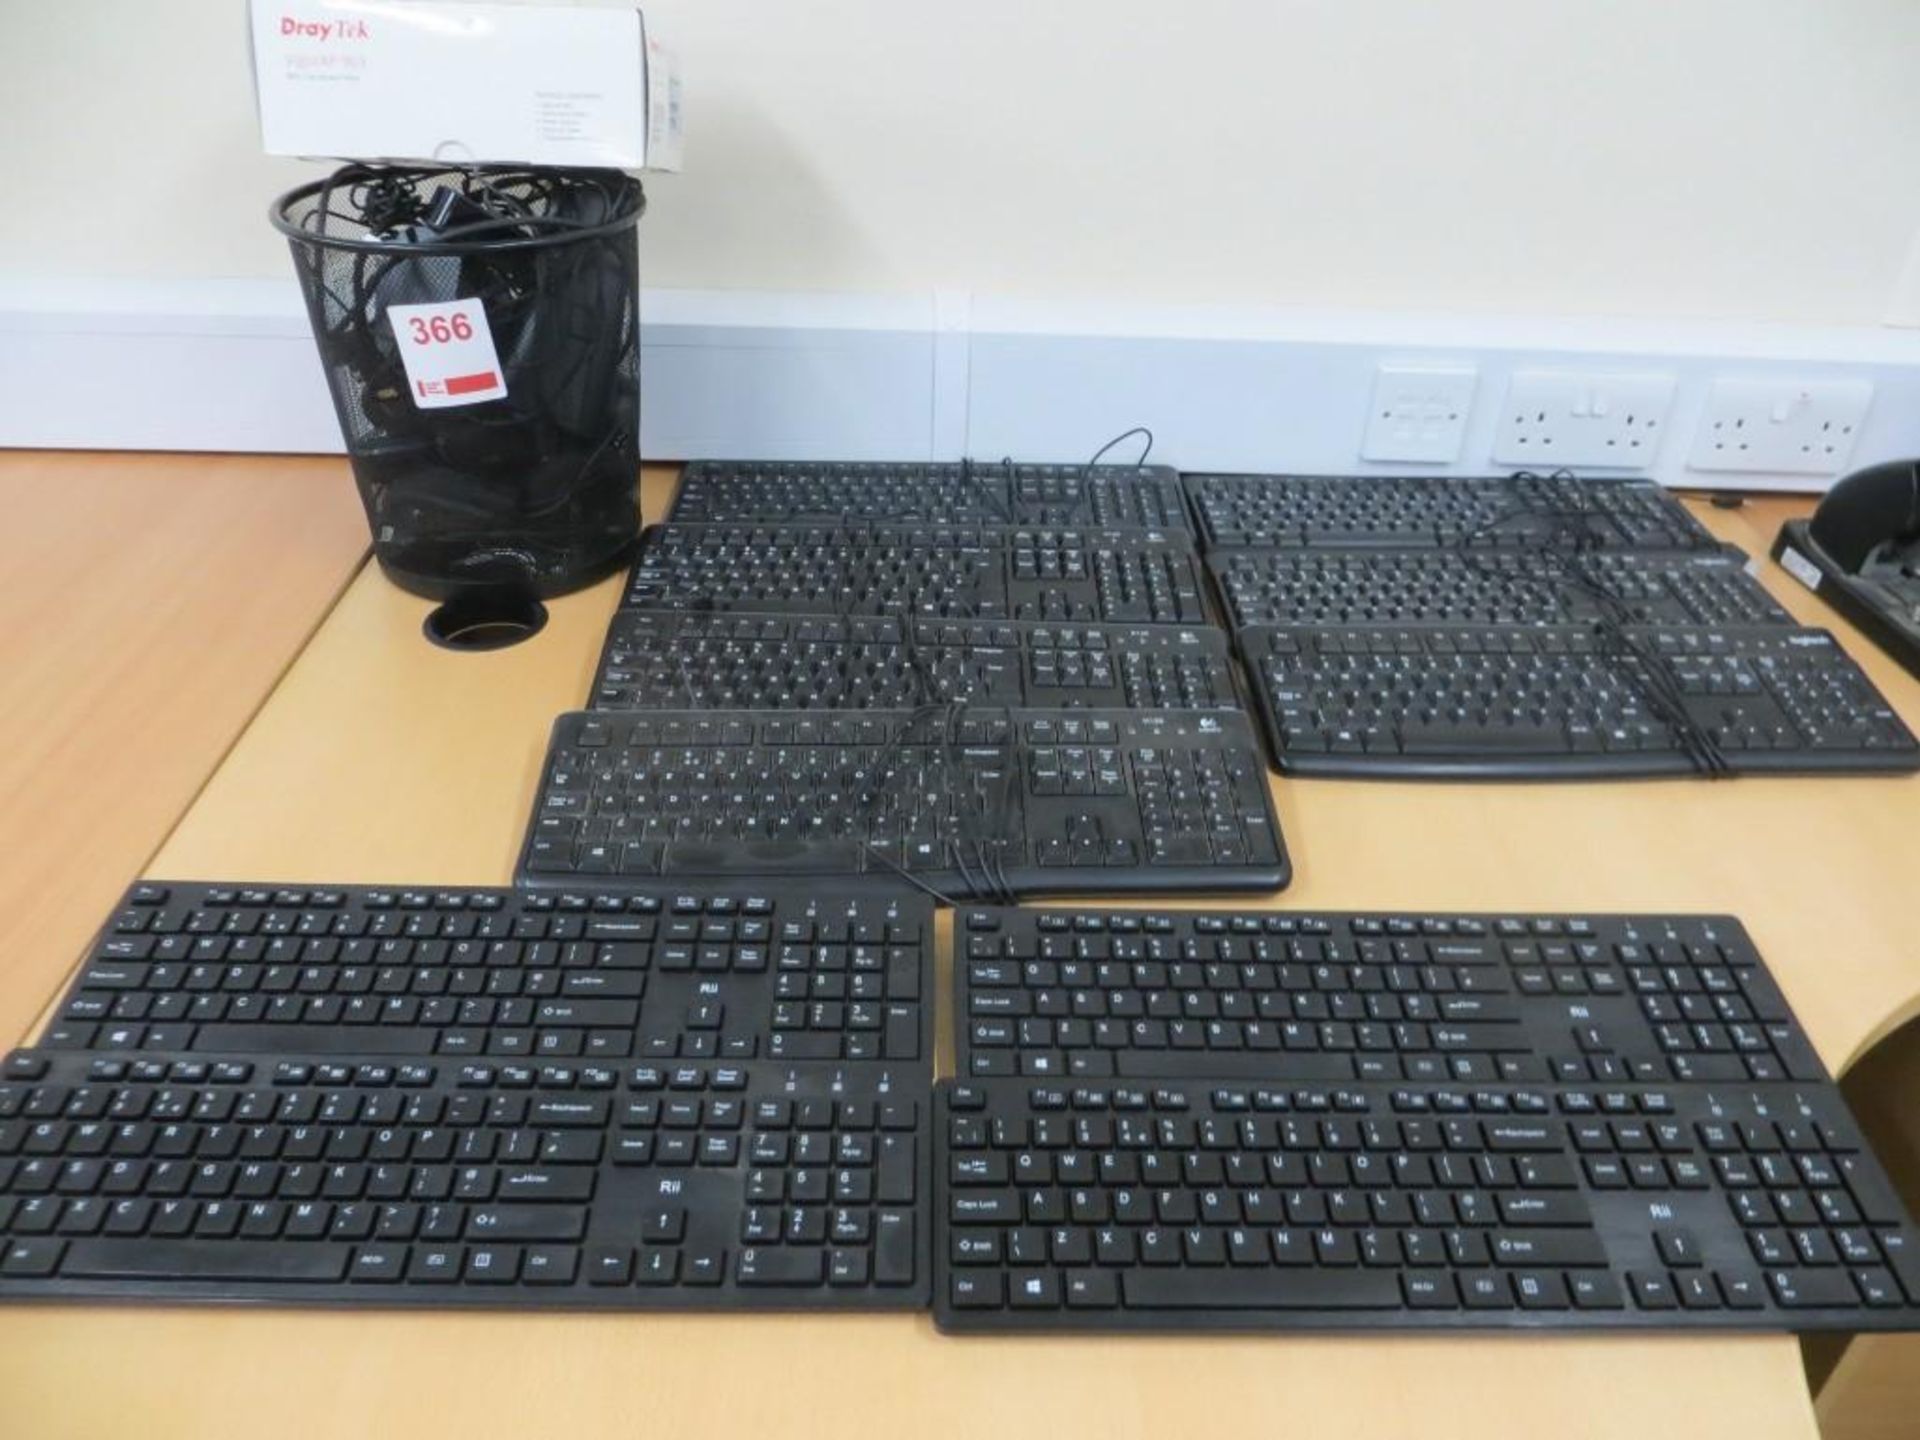 Seven Logitech keyboards, Four Rii wireless keyboards, 10 various wireless mice, 4 various mice, 2